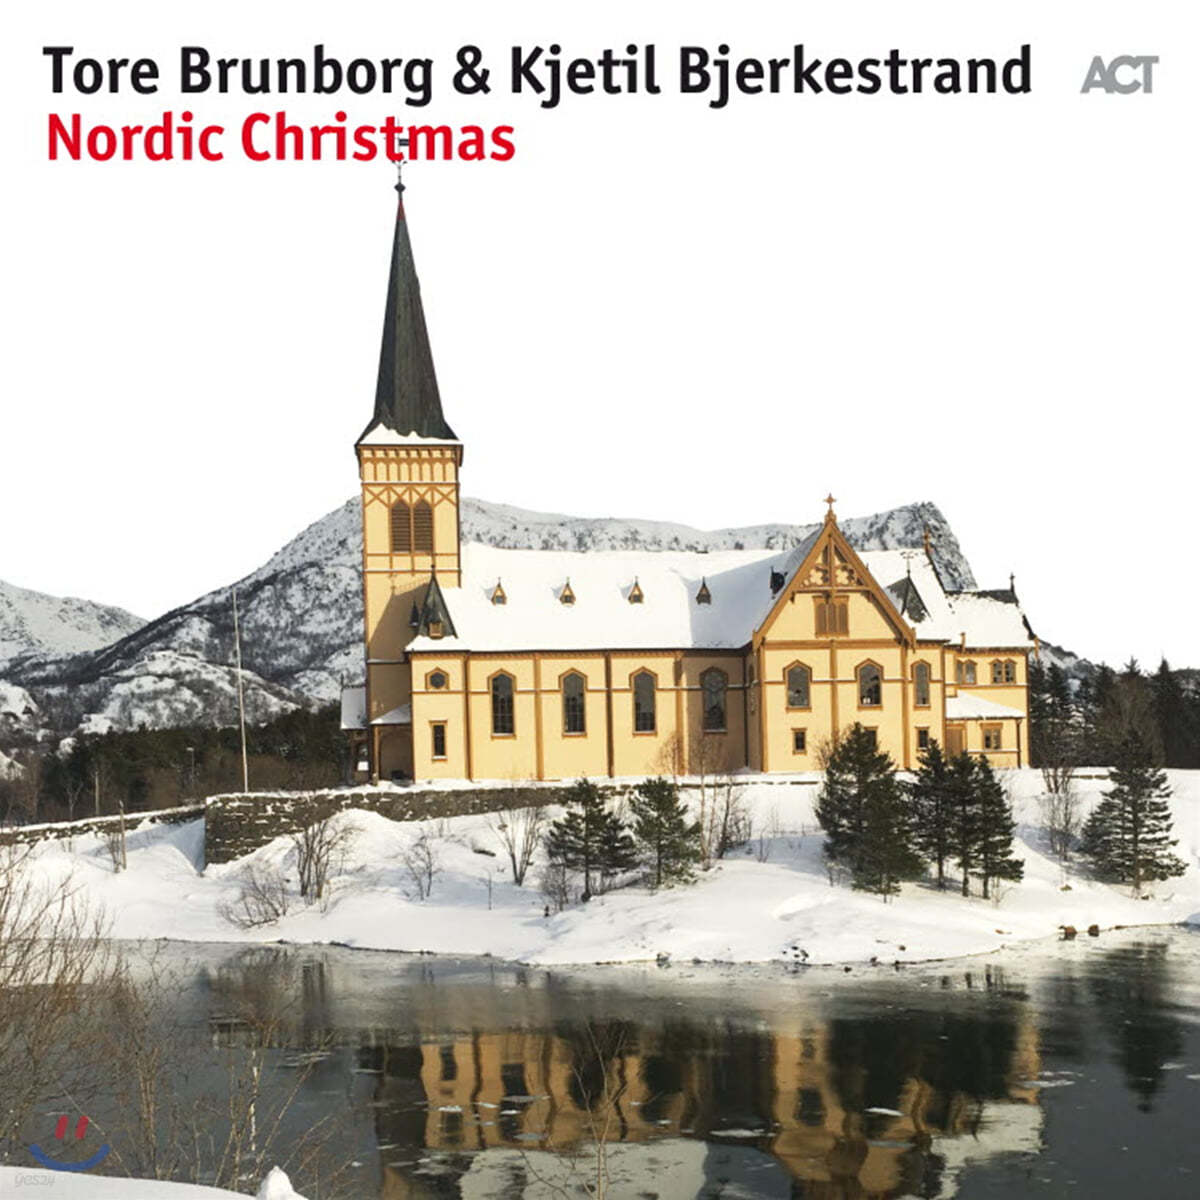 Tore Brunborg, Kjetil Bjerkestrand (토르 브룬보르그, 세틸 버커스트랜드) - Nordic Christmas